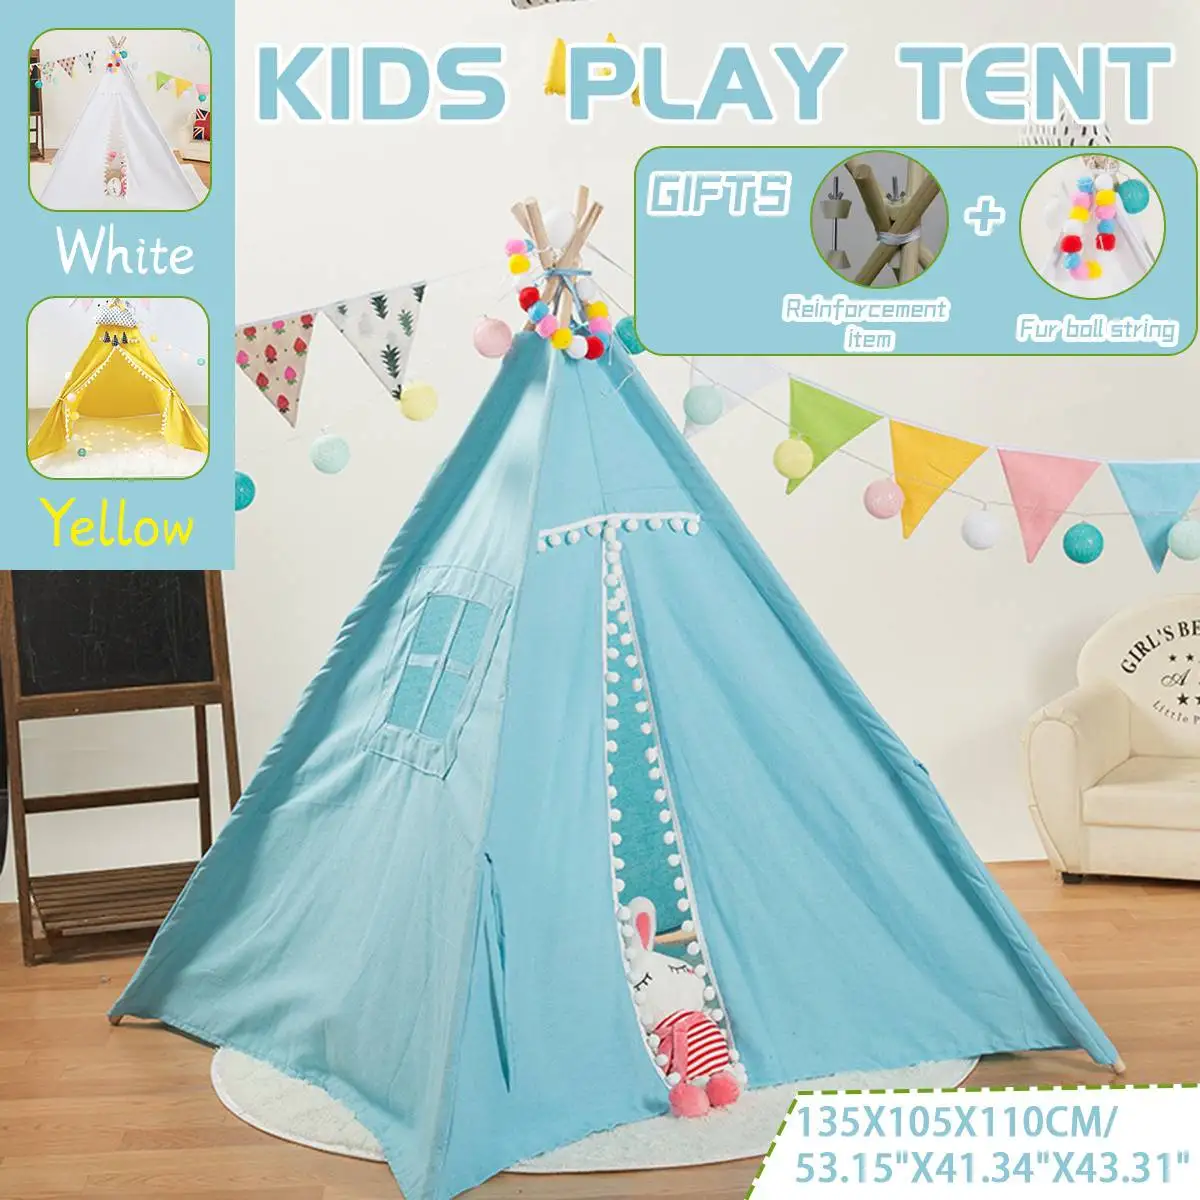 

Палатка Tipi для детей, 135 см, игровая палатка, вигвам, дом, вигвам, комната, детская палатка, игровой домик, треугольный вигвам, меховой шар, спа...